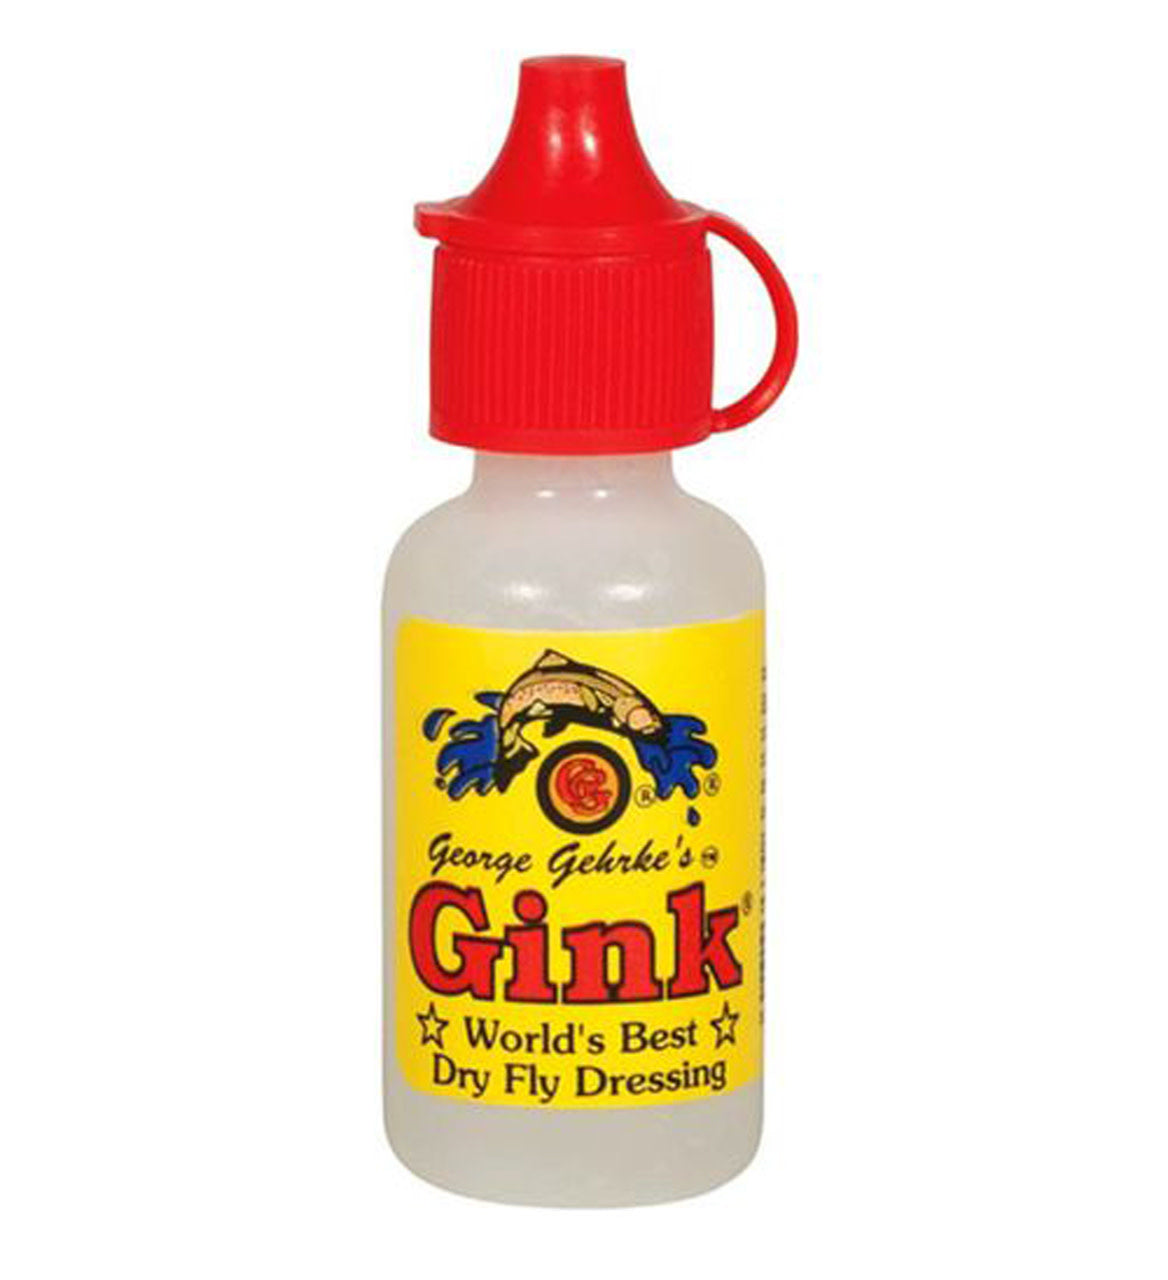 Gehrke's Gink Dressing Gel Floatant